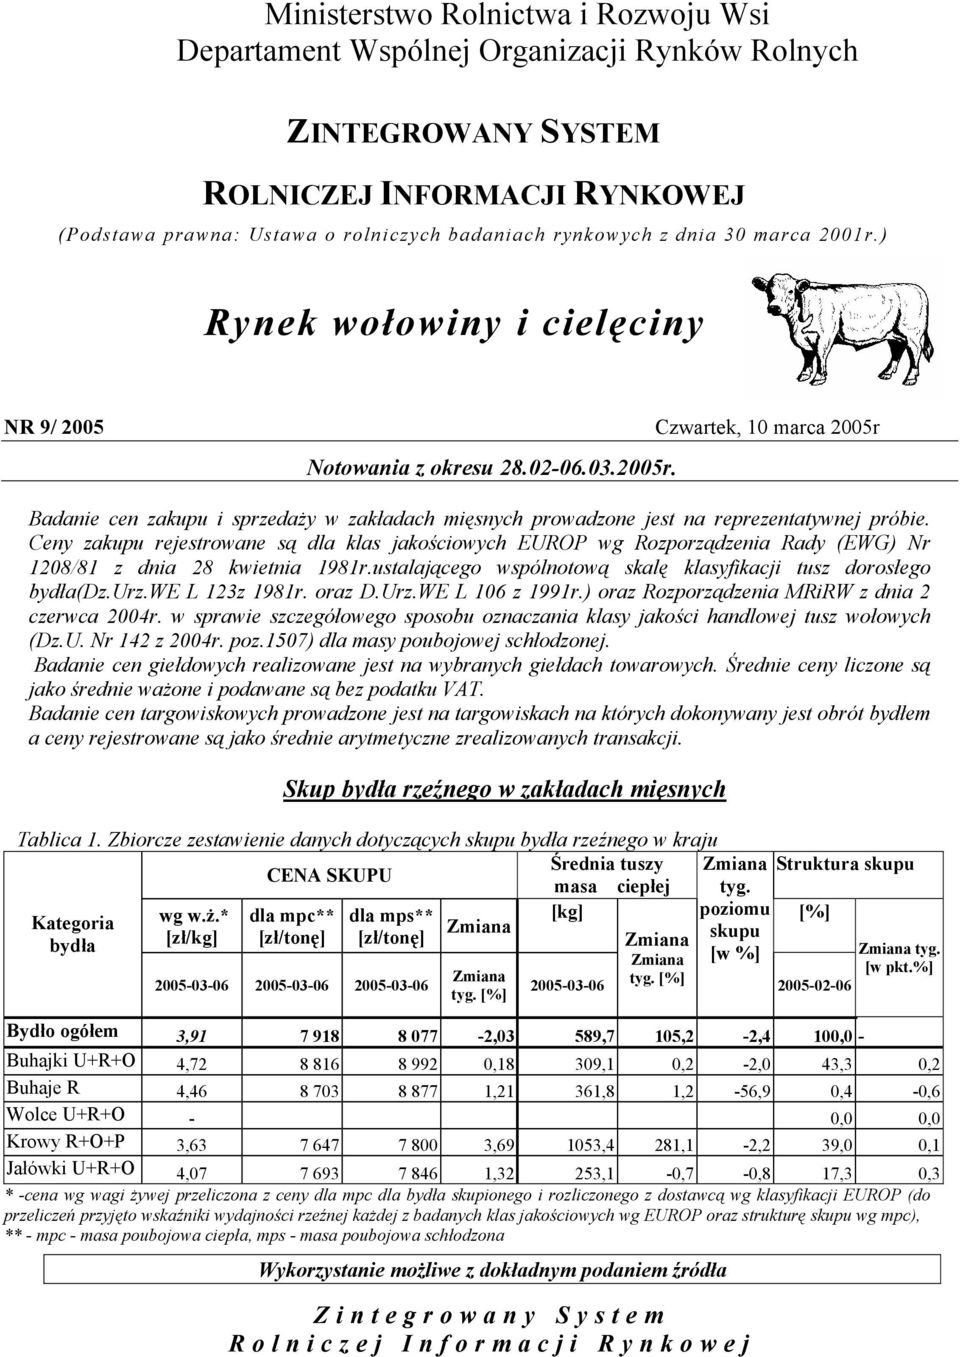 Ceny zakupu rejestrowane są dla klas jakościowych EUROP wg Rozporządzenia Rady (EWG) Nr 208/8 z dnia 28 kwietnia 8r.ustalającego wspólnotową skalę klasyfikacji tusz dorosłego bydła(dz.urz.we L 2z 8r.